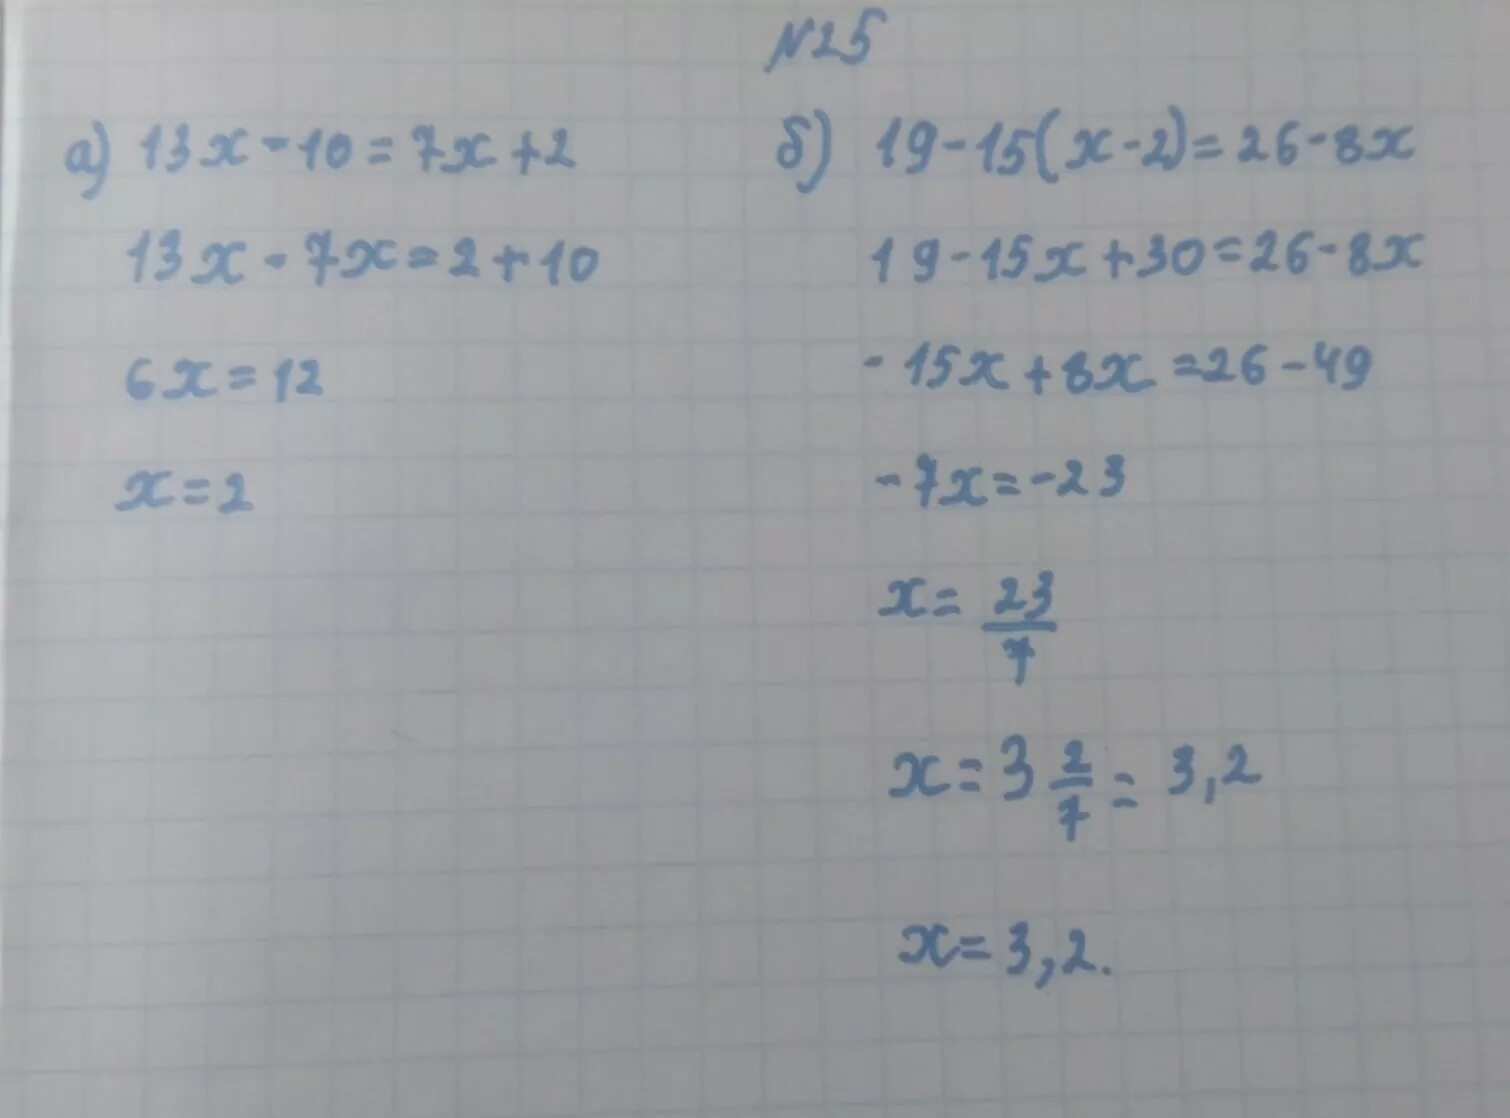 13 X 2 2 X 13 2. (13-Х)(13-X) решение. 13x-26=130 решение. 13х-26 -130 решить.